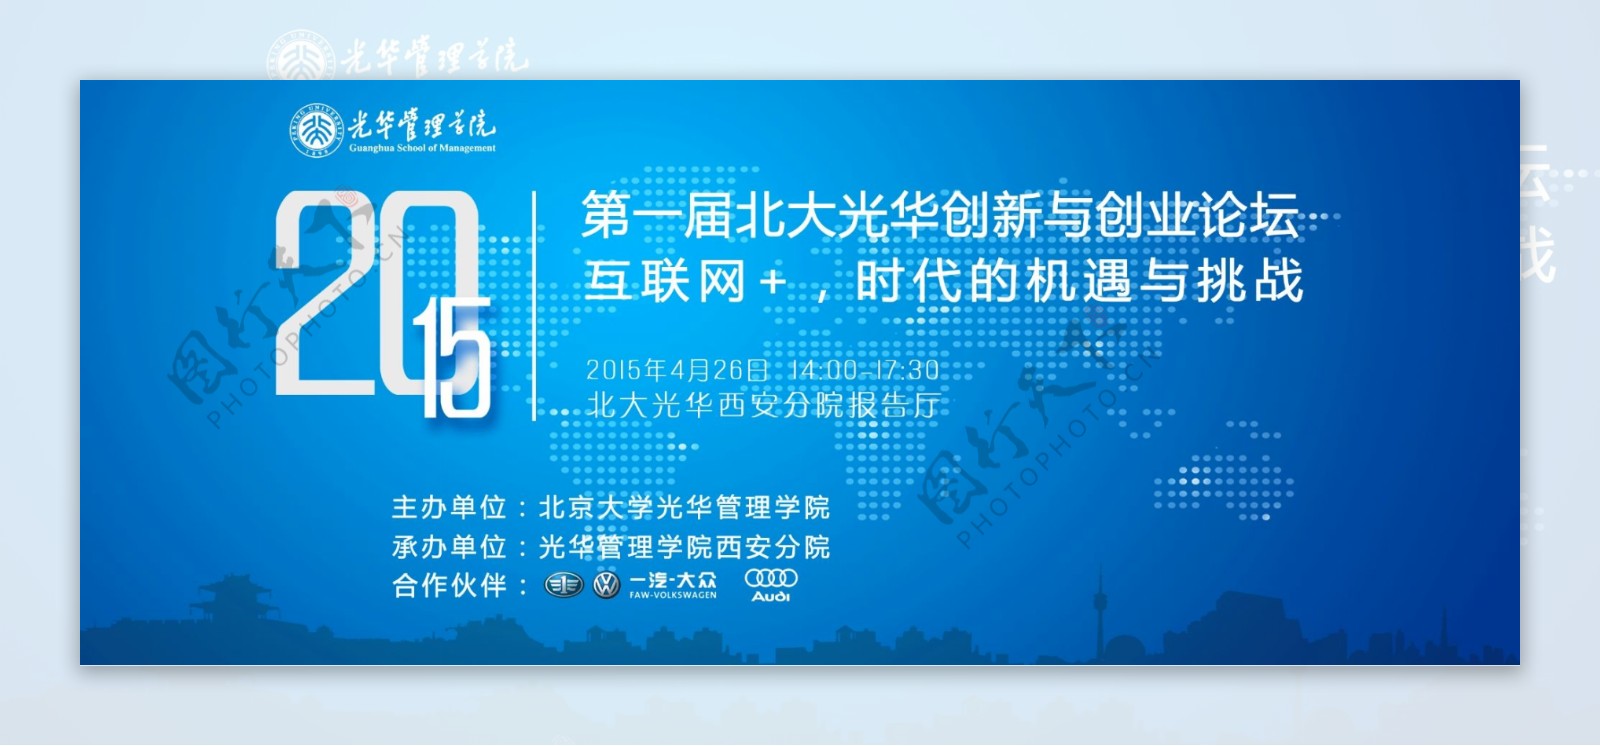 蓝色科技北京海报PSD文件互联网